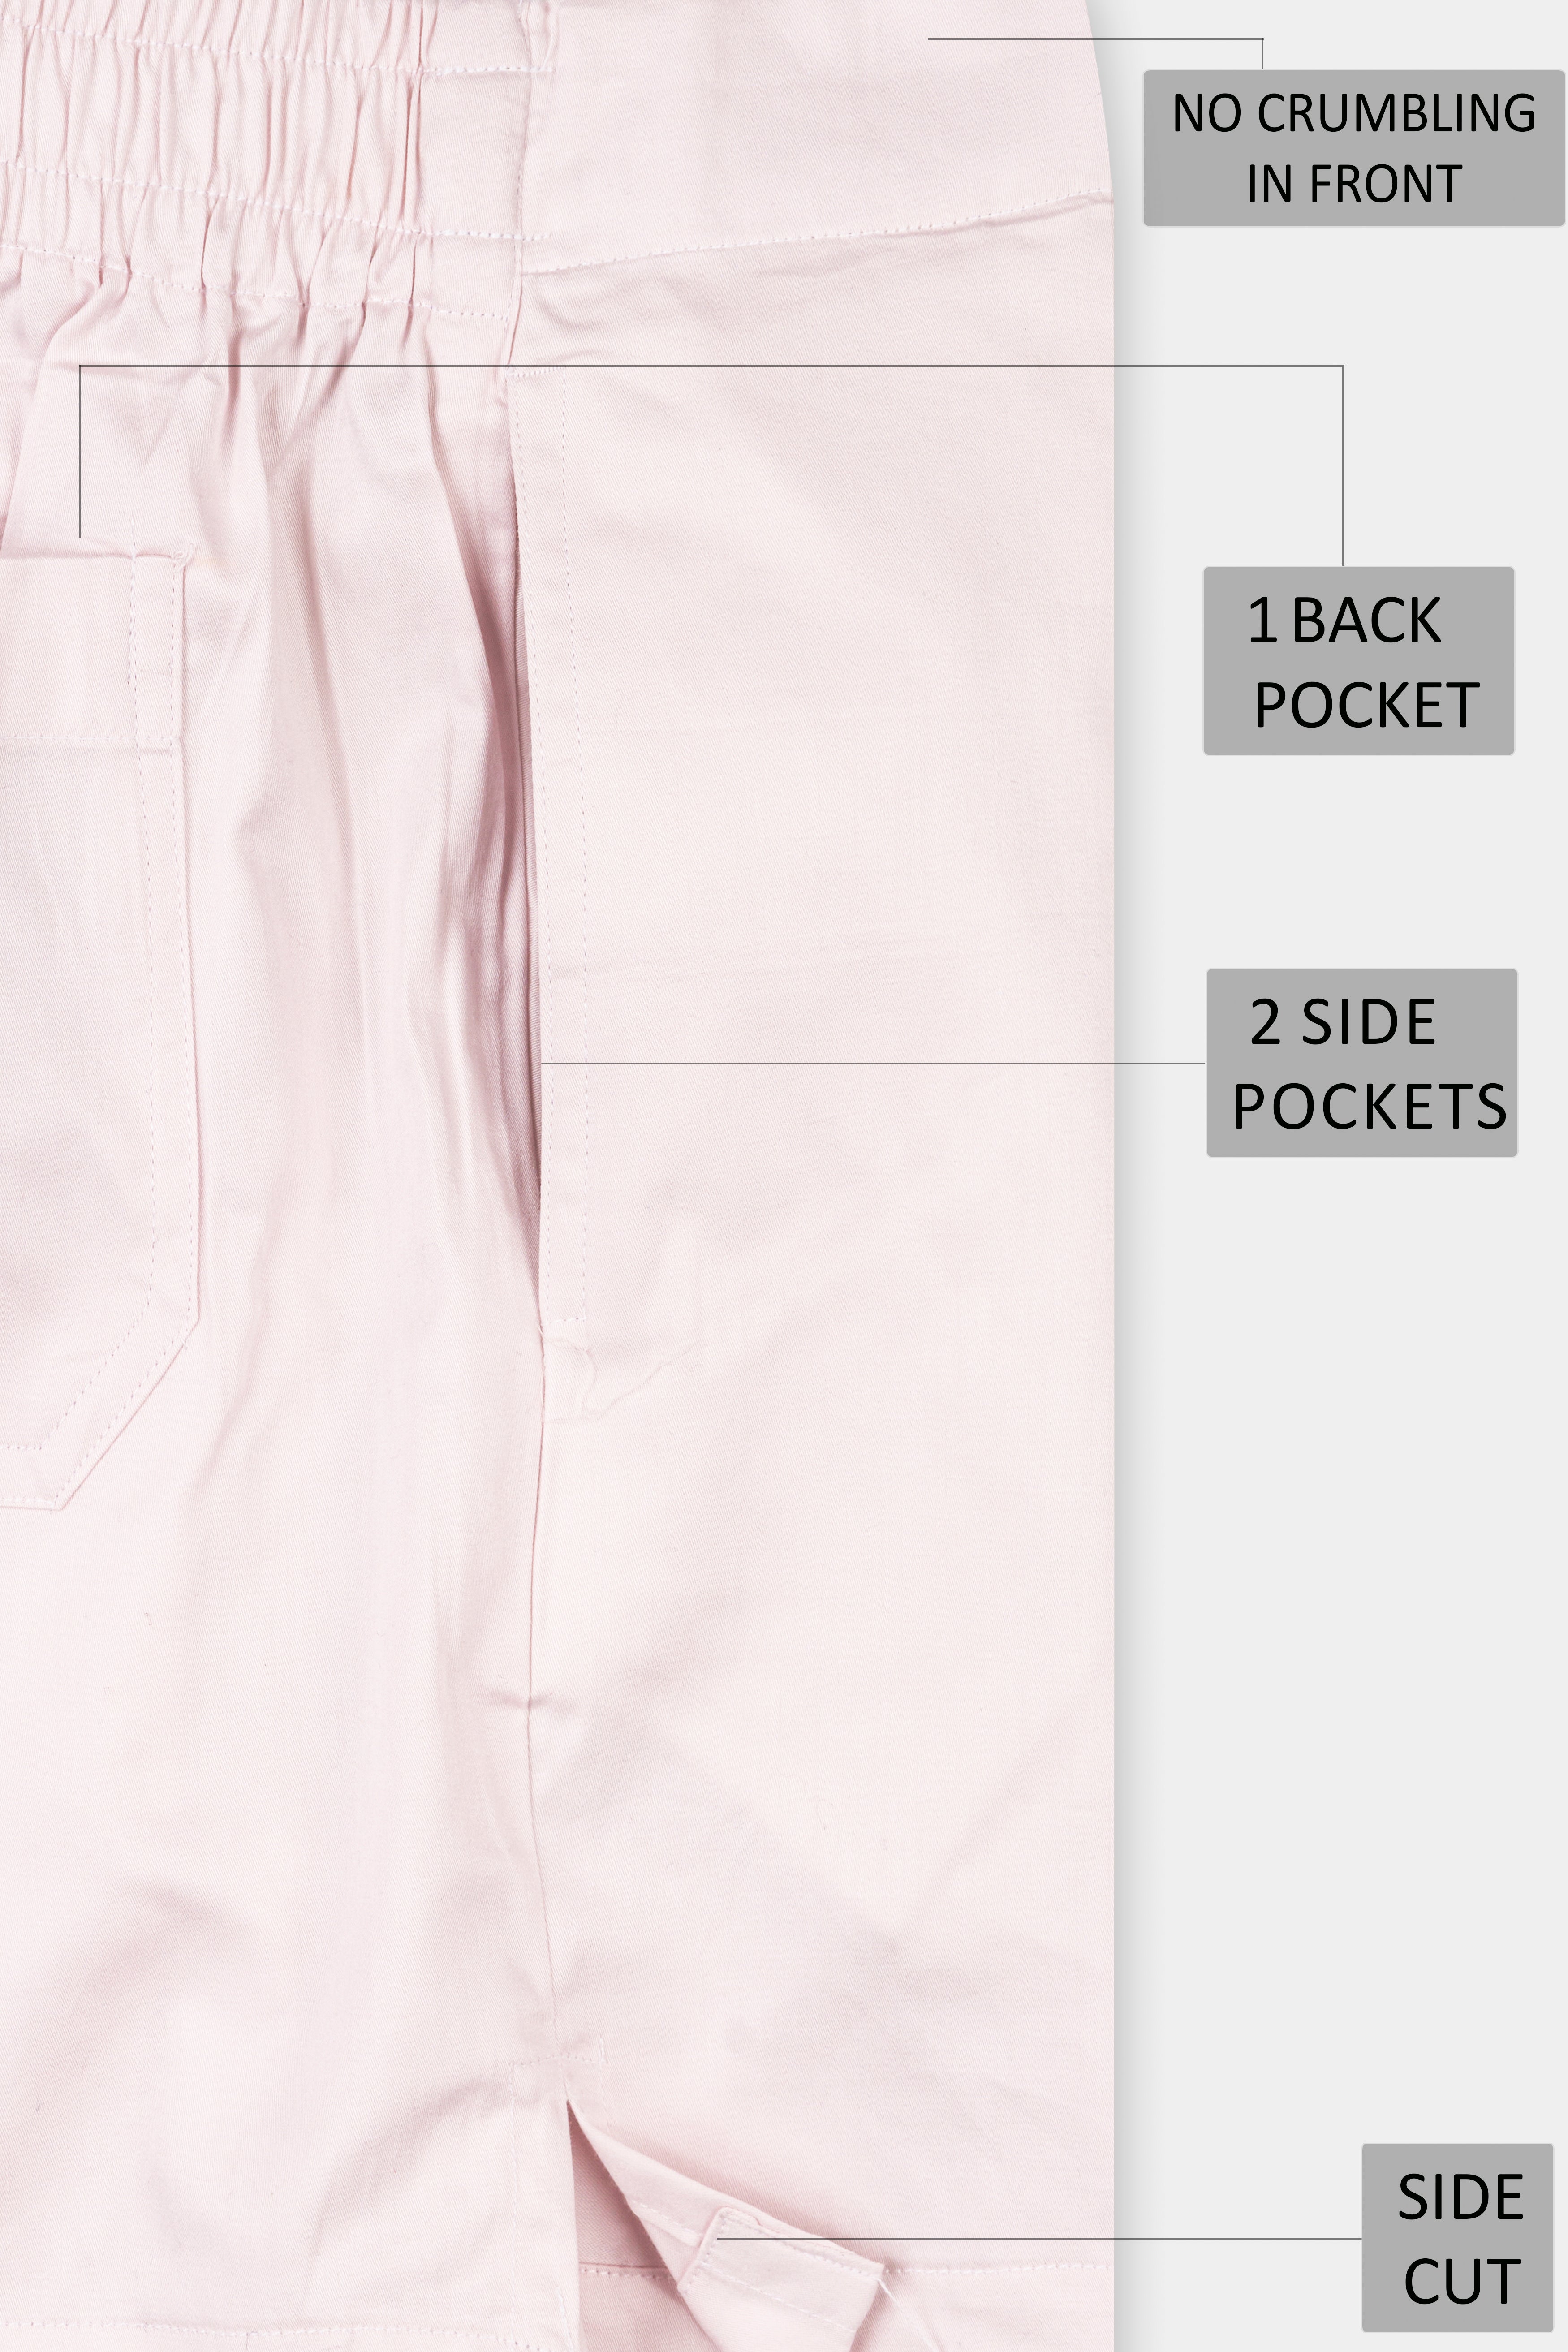 Bizarre Pink Super Soft Premium Cotton Boxer BX540-28, BX540-30, BX540-32, BX540-34, BX540-36, BX540-38, BX540-40, BX540-42, BX540-44